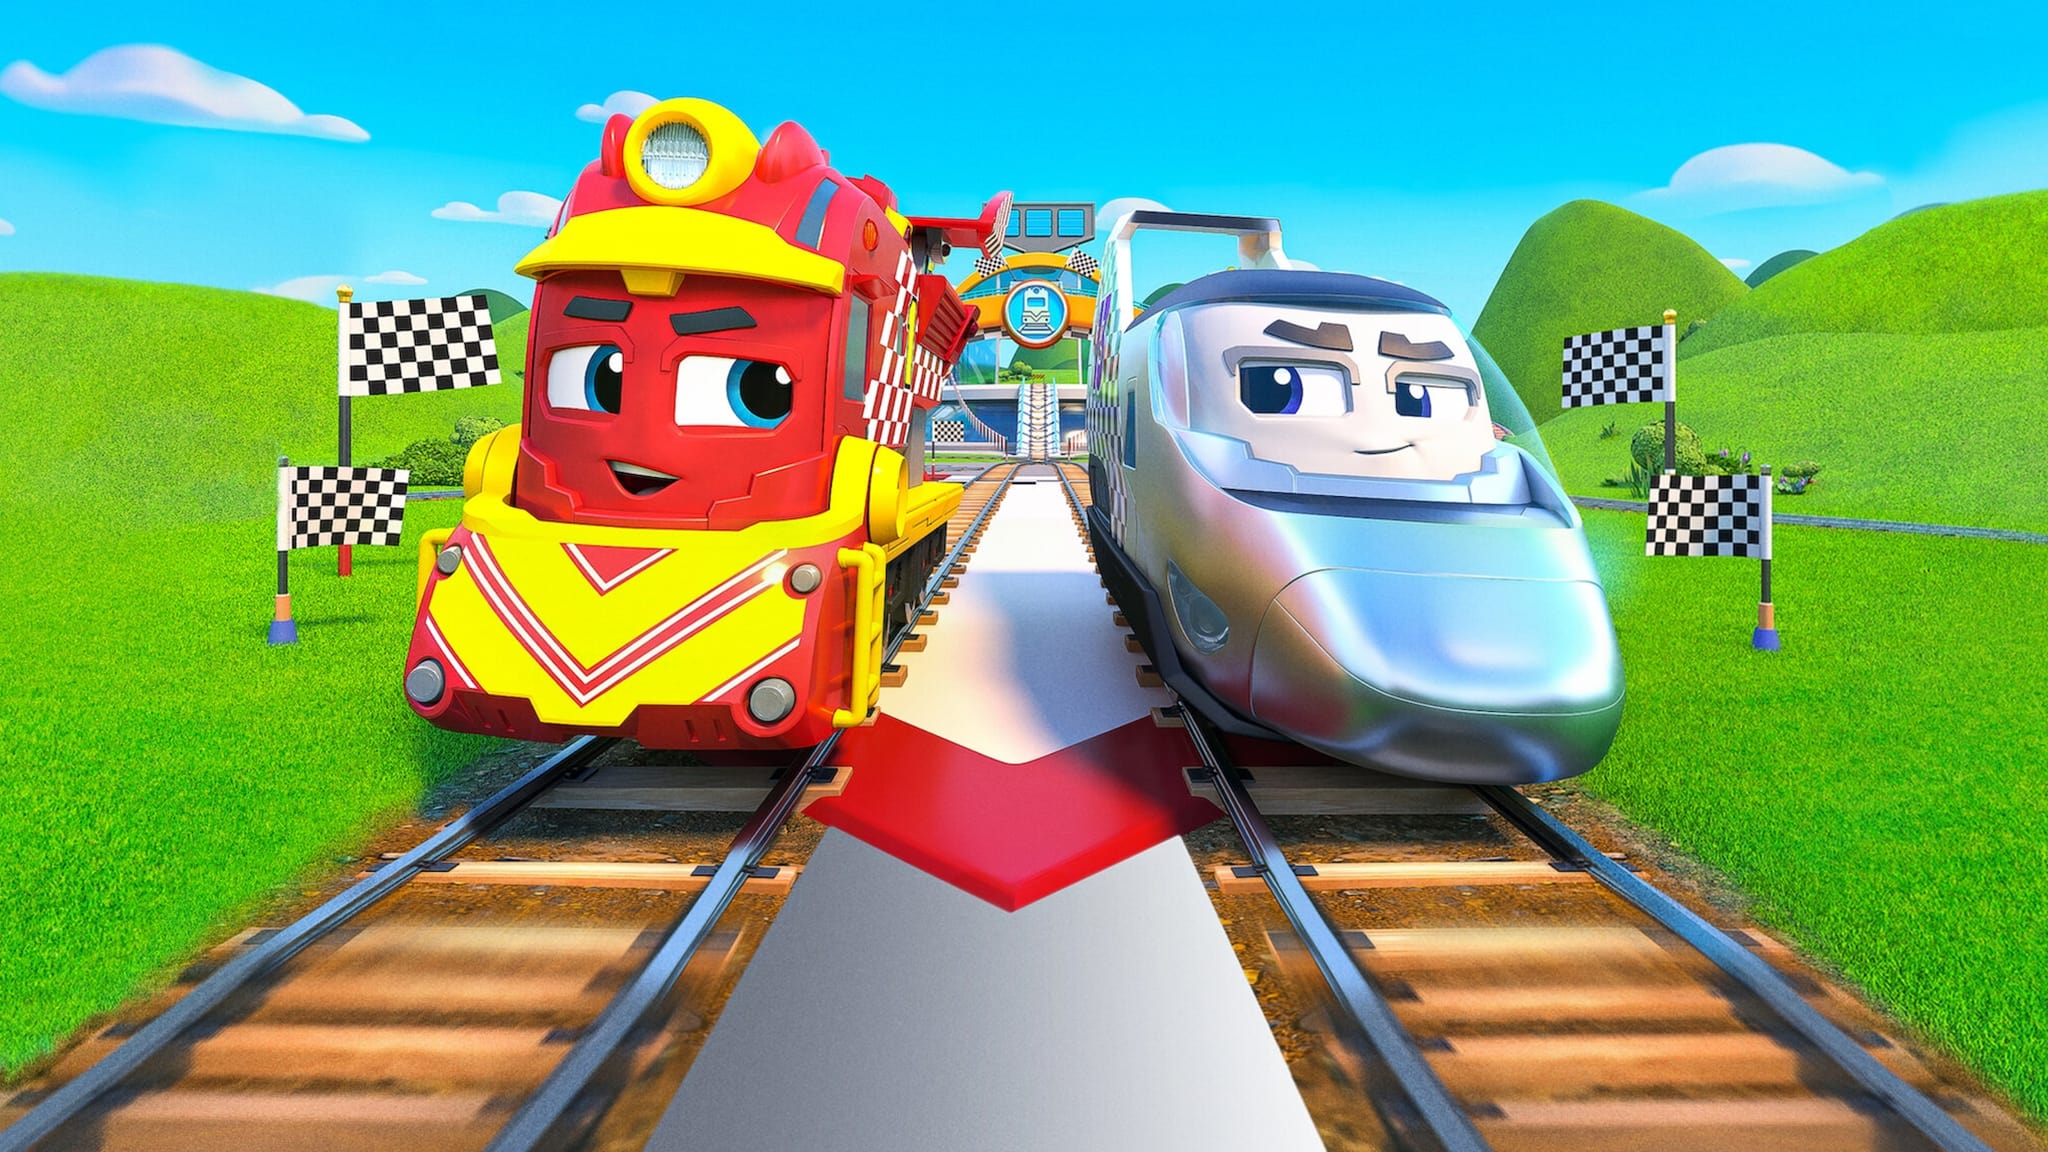 Mighty Express: La gara dei treni superveloci!